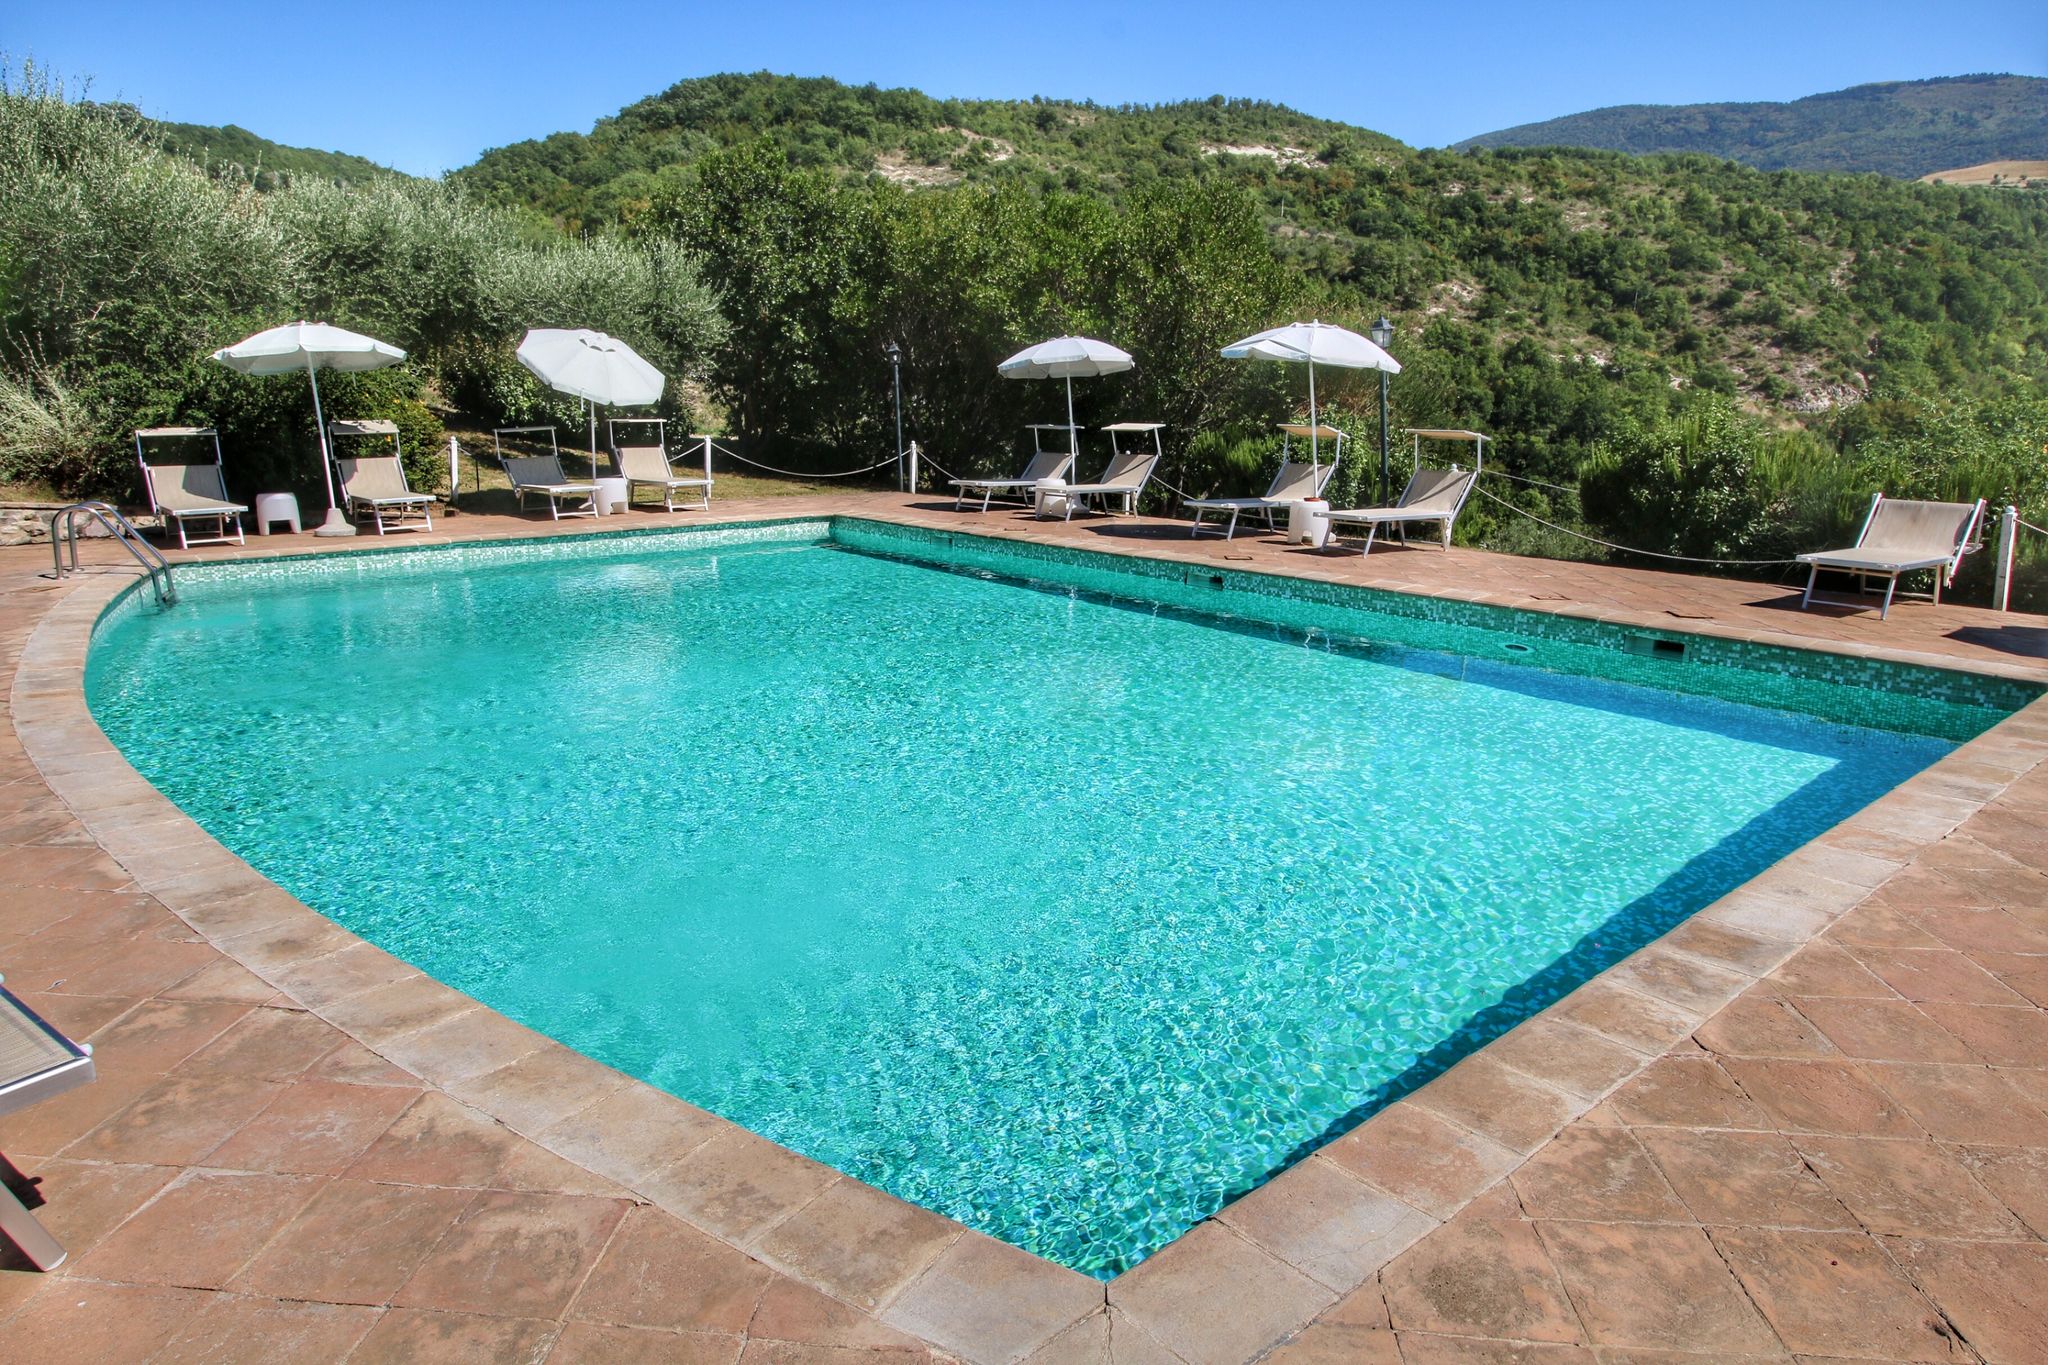 Maison de vacances pittoresque à Assise avec piscine